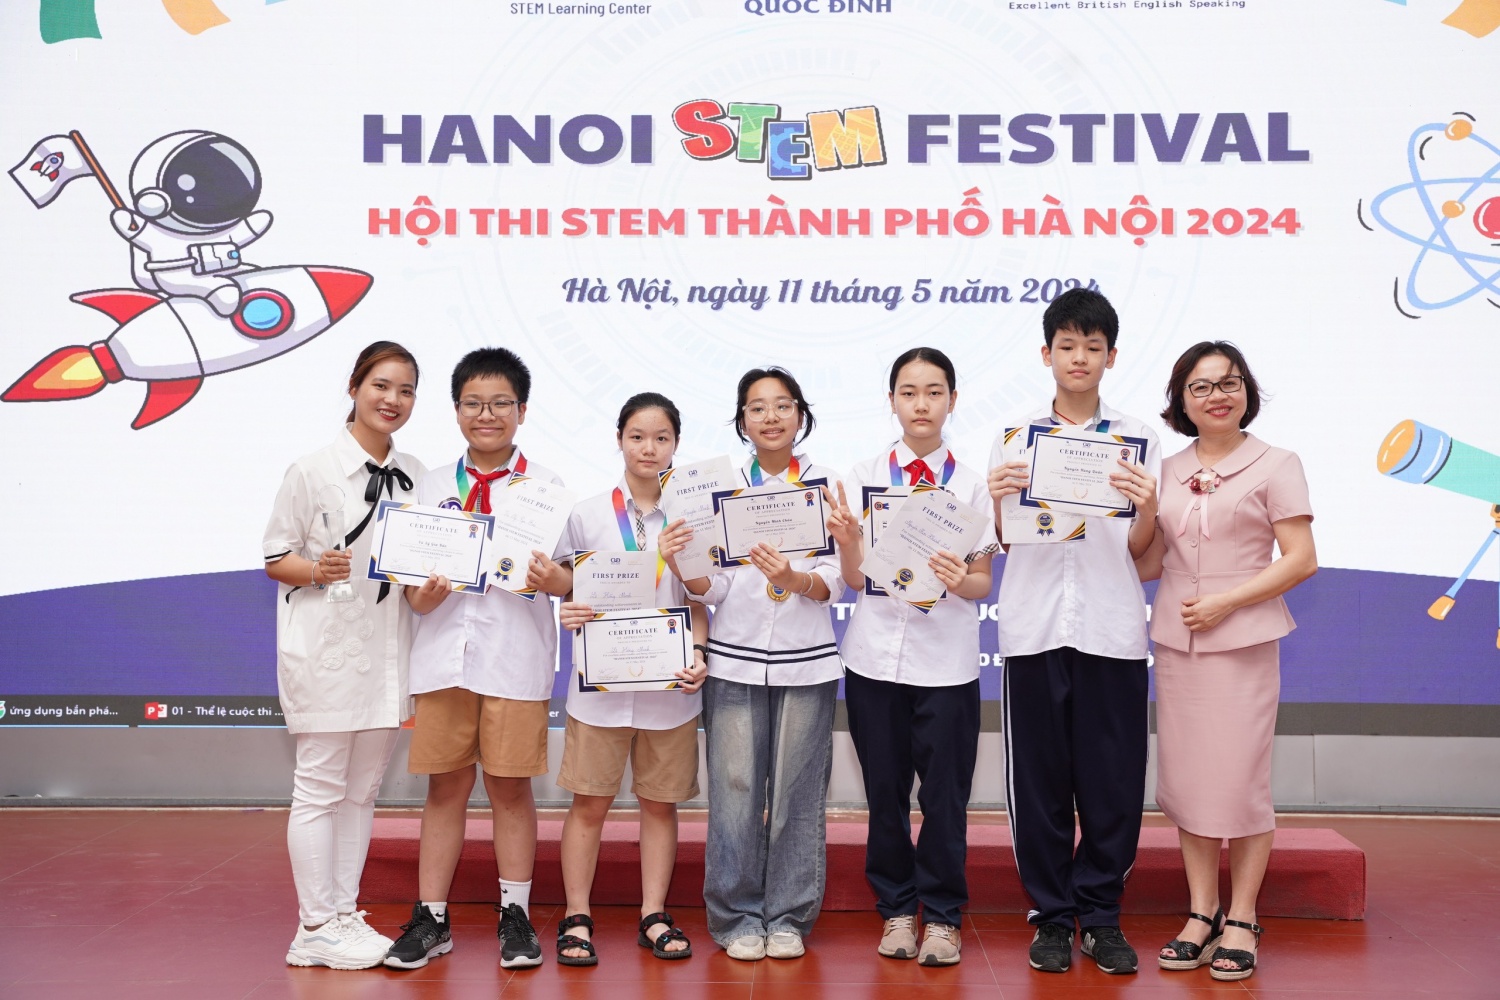 Ha Noi STEM Festival - Hội thi STEM Thành phố Hà Nội